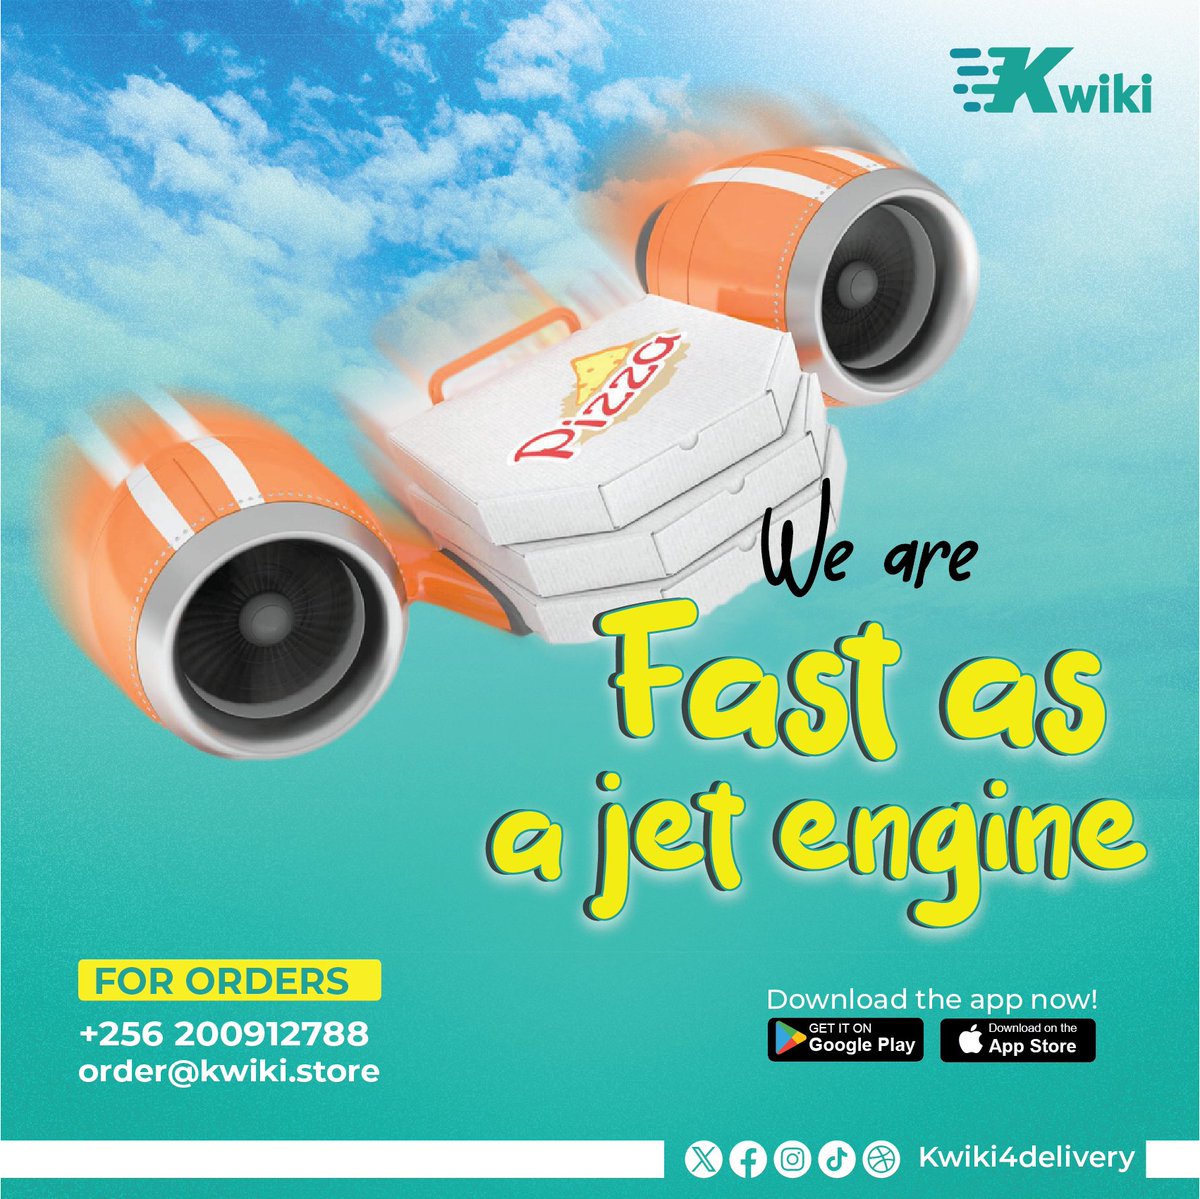 We deliver exceptional performance more quicker than a blink.

#kwiki4delivery #kwikidelivery #kwiki #food #fooddelivery #fastdelivery
#fypシ #fy #fyp #foryou #foryoupage #delivery #uganda #doitquickwithkwiki #alwaysontime #ordernow #wedeliver #wedeliverontime